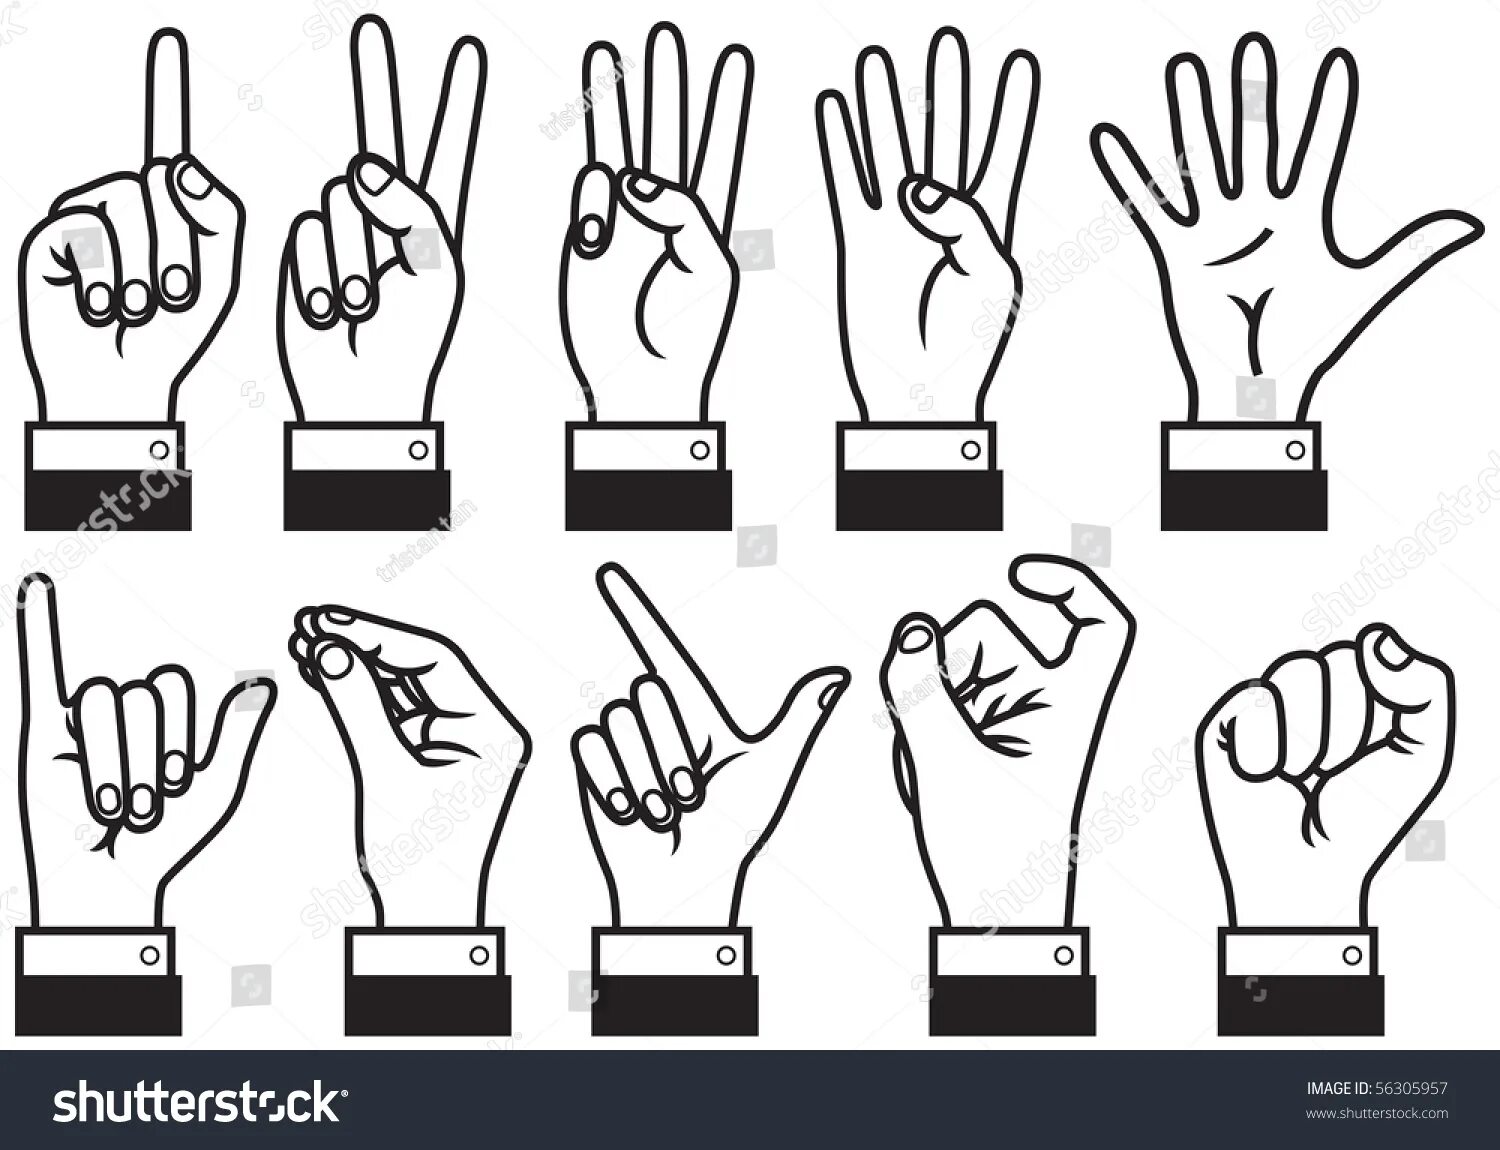 Китайские цифры жестами. Китайские цифры на пальцах. Обозначение пальцев. Китайский жест пальцами. Цифра 5 на китайском